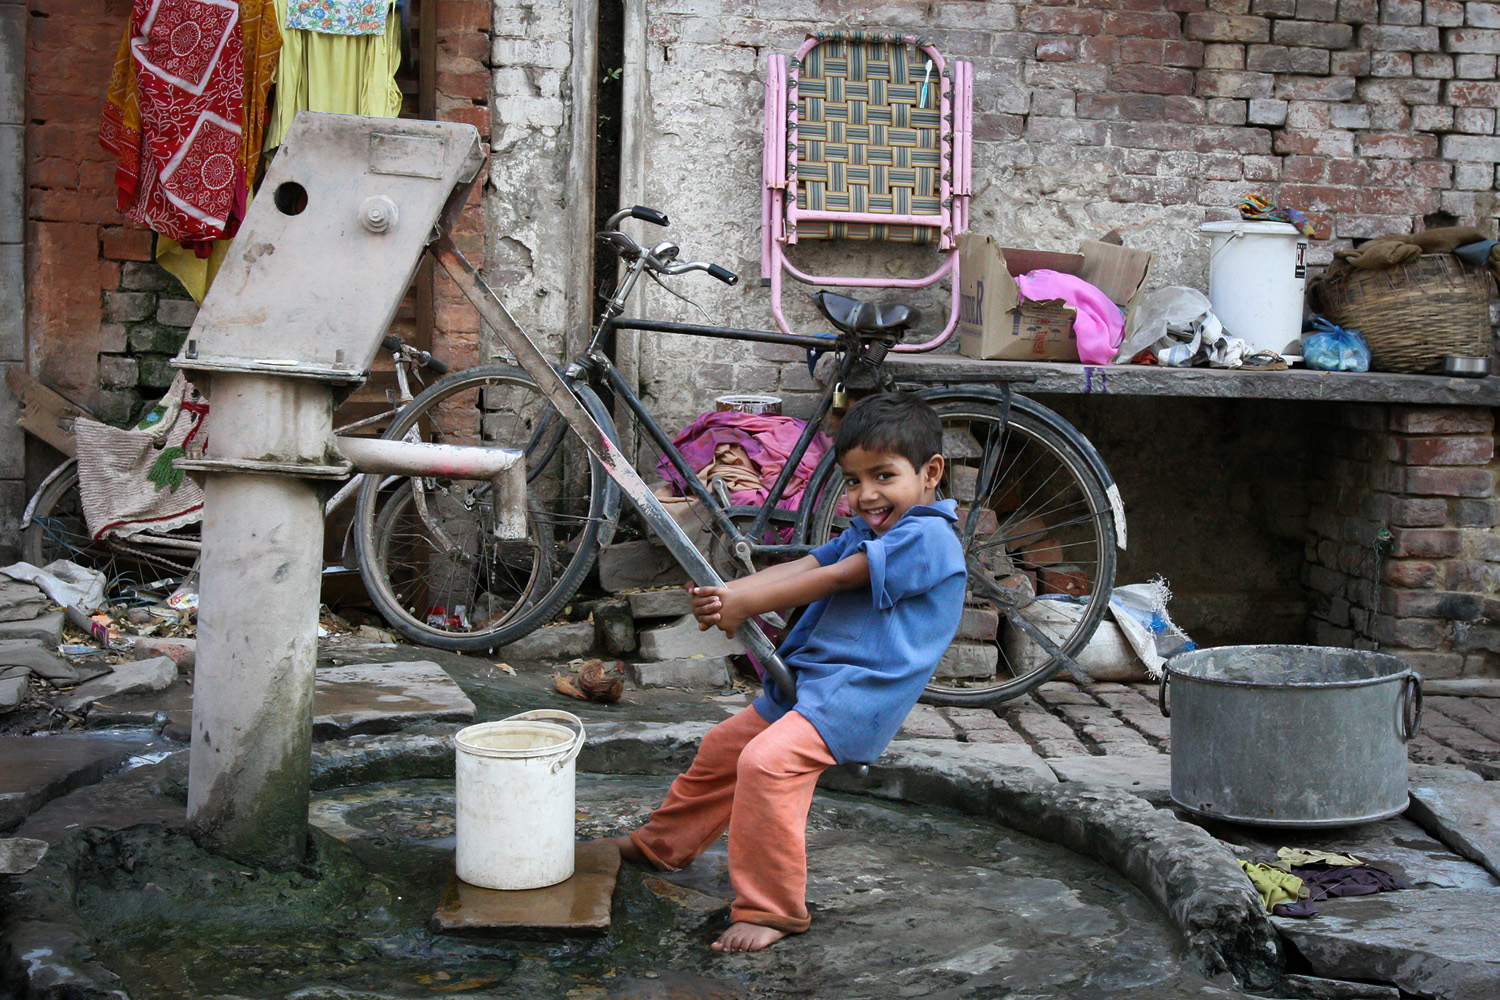 Boy fills up his bucket in Varanasi, India (c) Bart Coolen